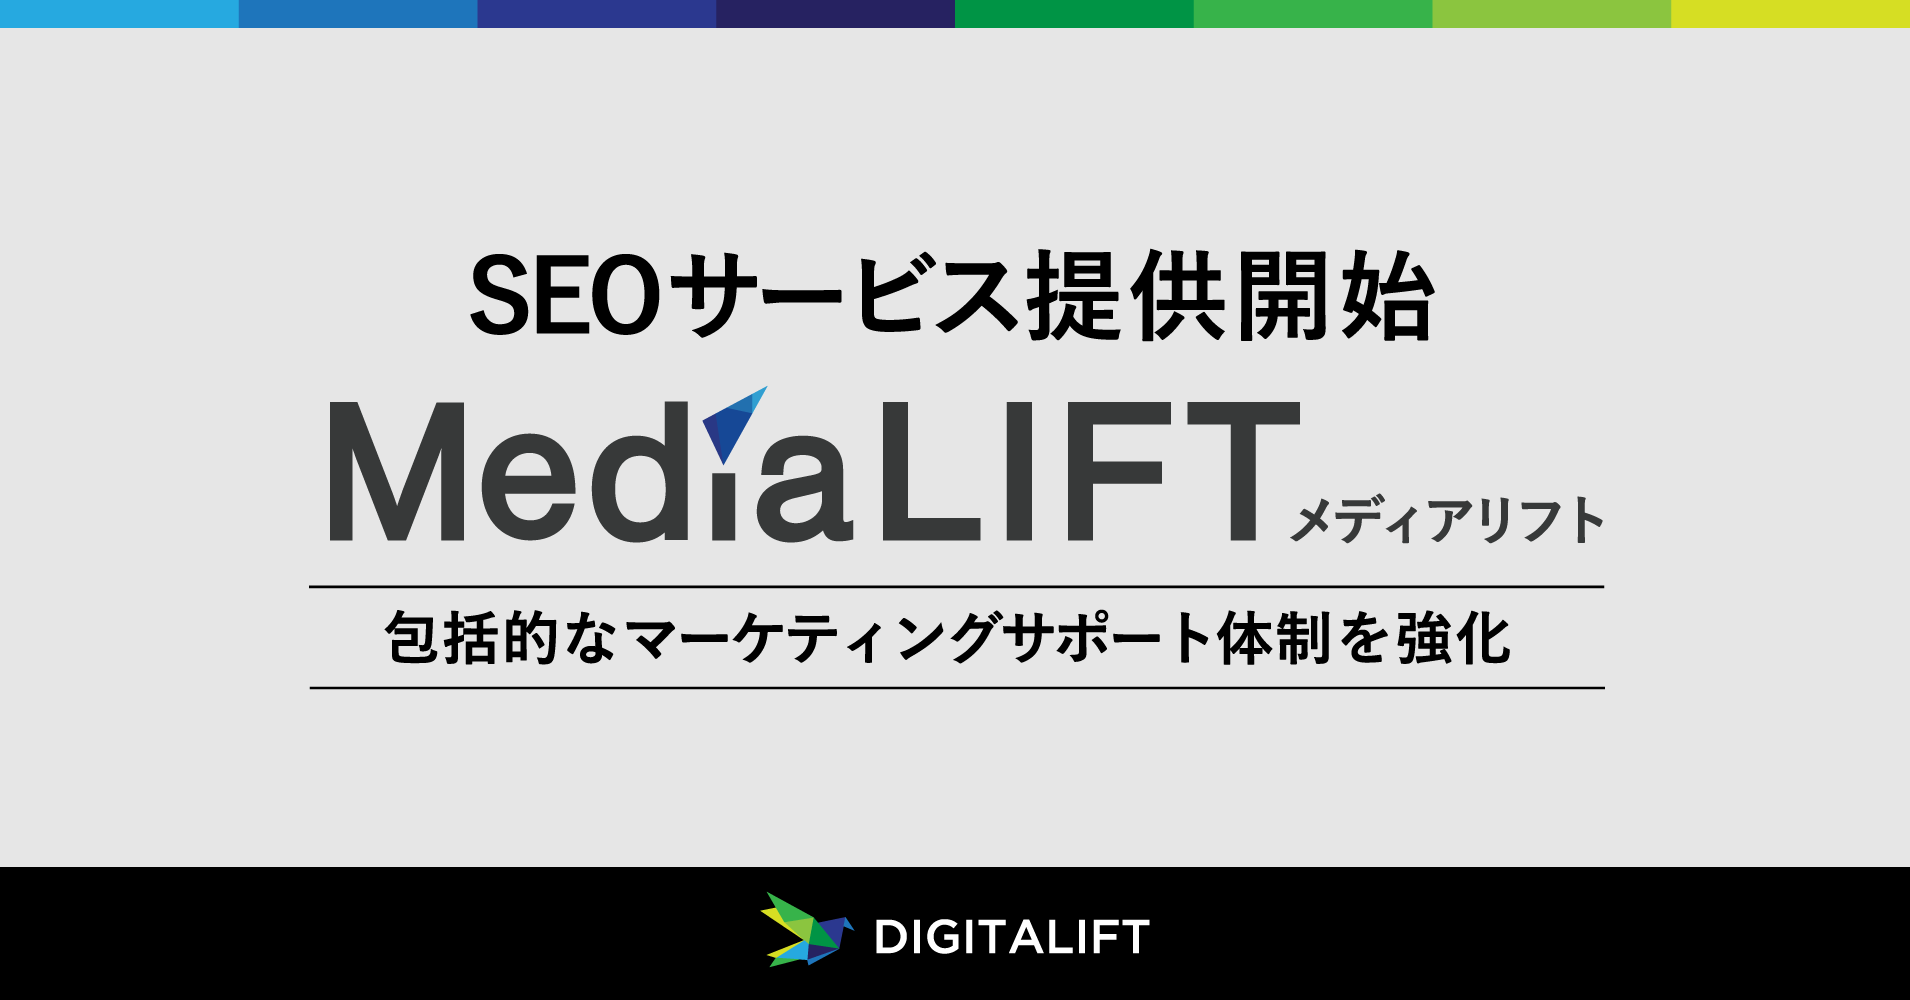 デジタリフト、SEOサービス「Media LIFT」の提供を開始